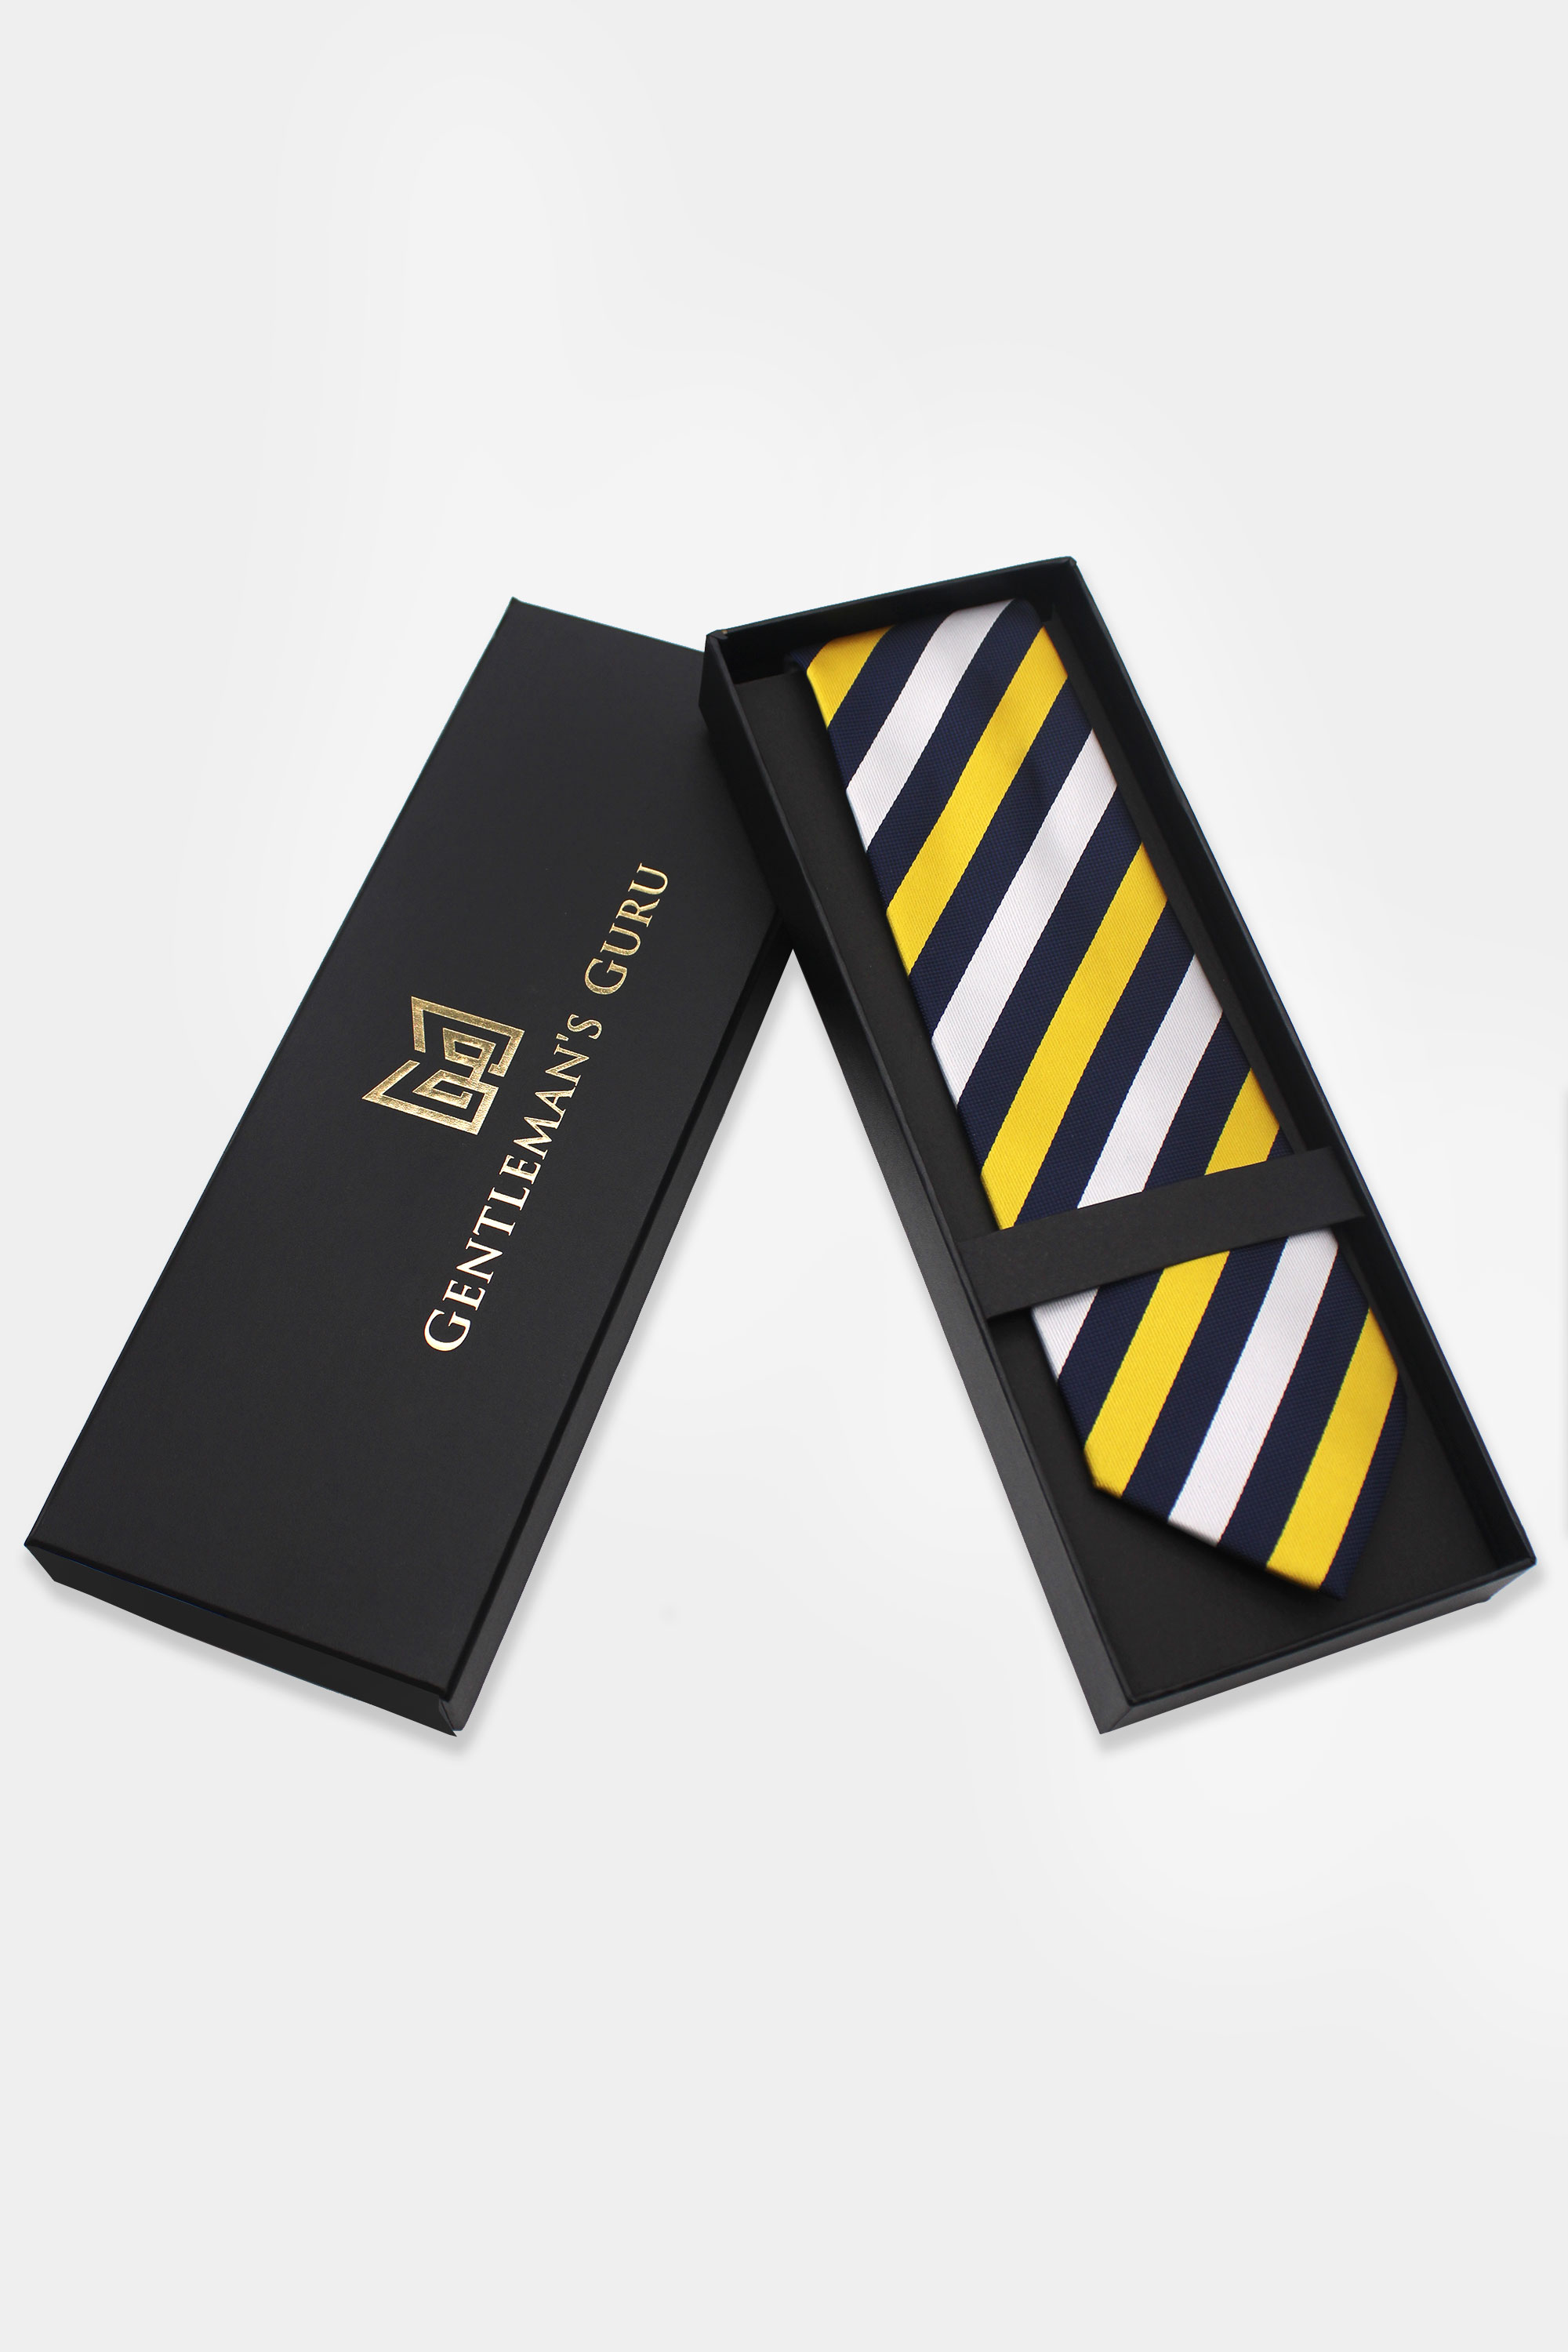 Gold-and-Navy-Blue-Striped-Tie-from-Gentlemansguru.com